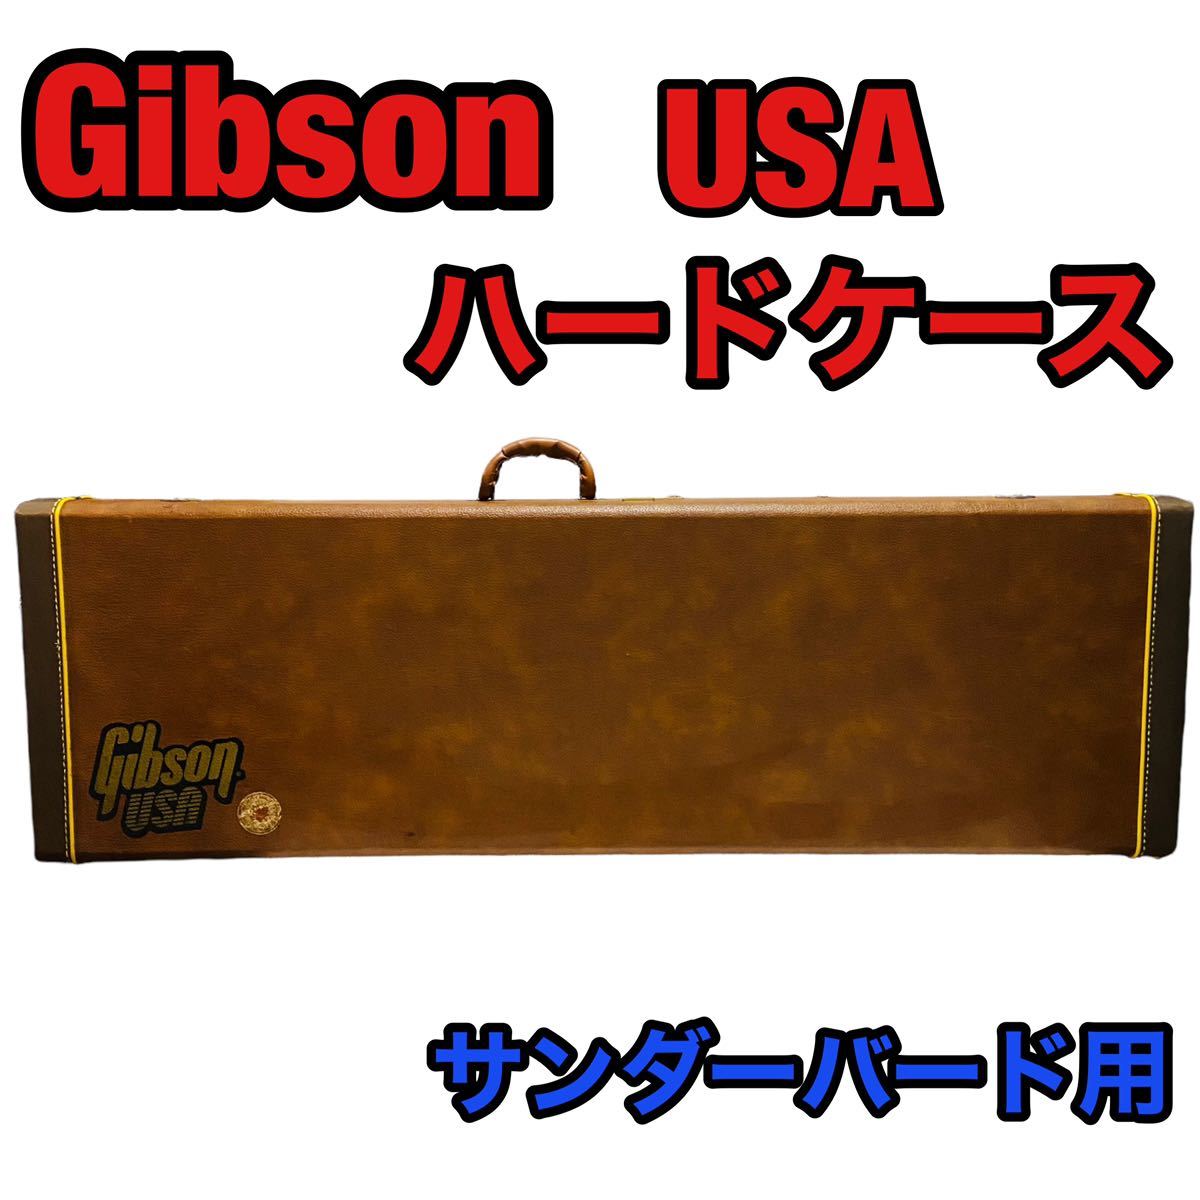 Gibson USA ギブソン ツインバード Thunderbird ハードケース ベース Bass用 ブラウン ナンバーロック付 鍵付き ベーシスト